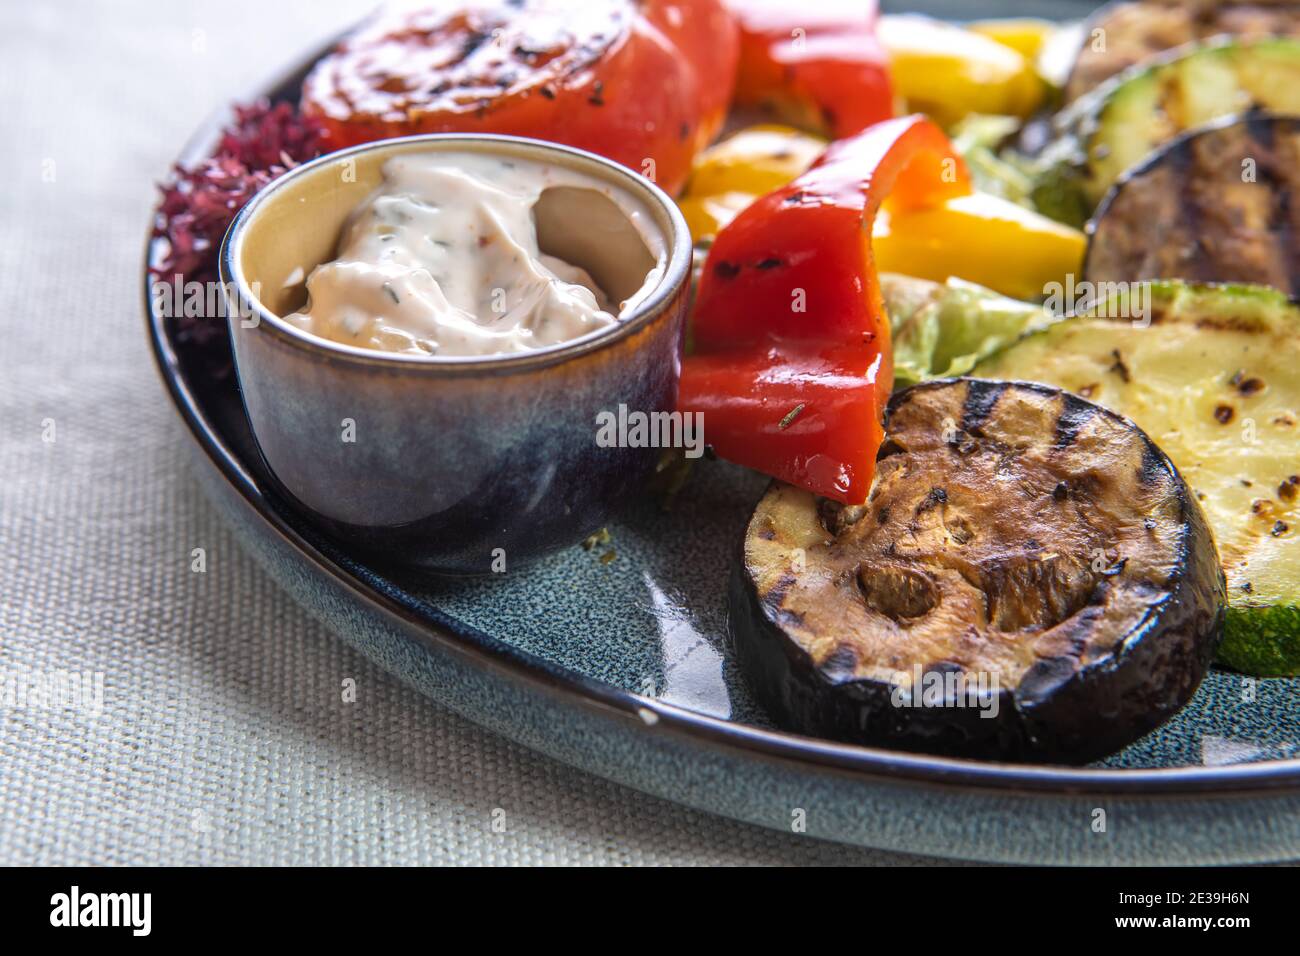 Légumes grillés : aubergines, tomates, poivrons et sauce sur des assiettes sur fond blanc isolé. Gros plan. Banque D'Images